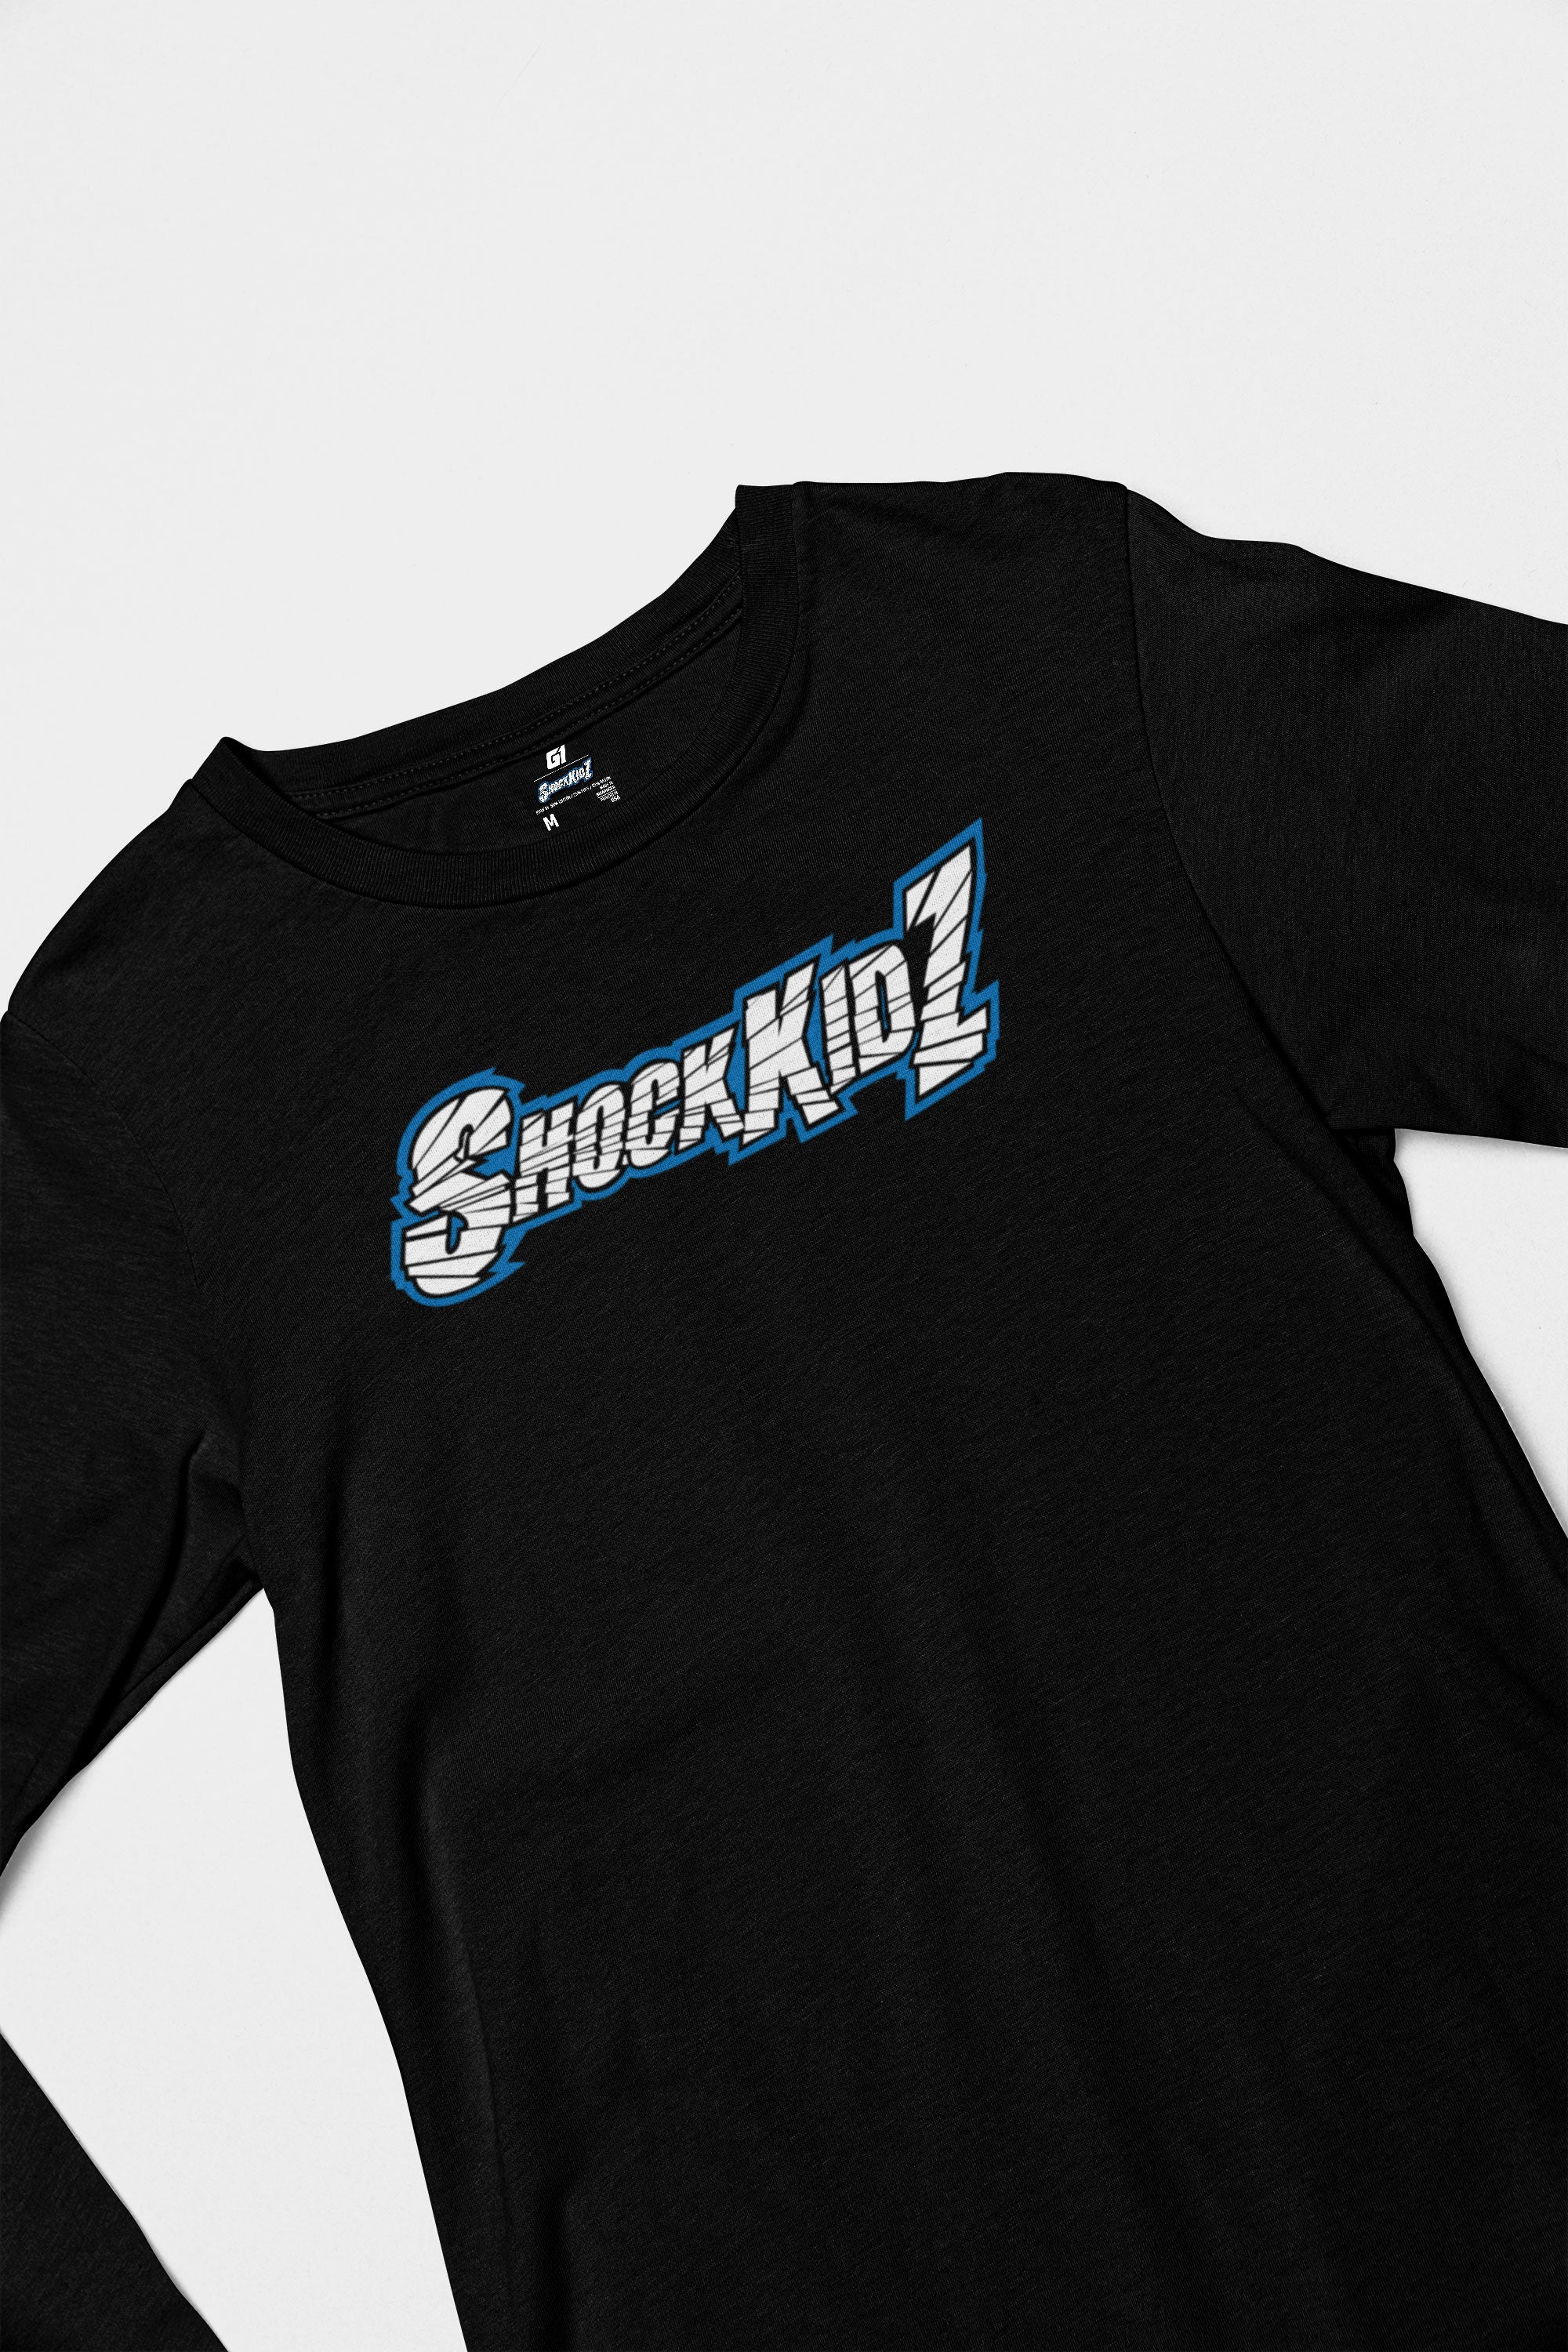 Shockkidz- Ultra-soft long sleeve Tee by G1